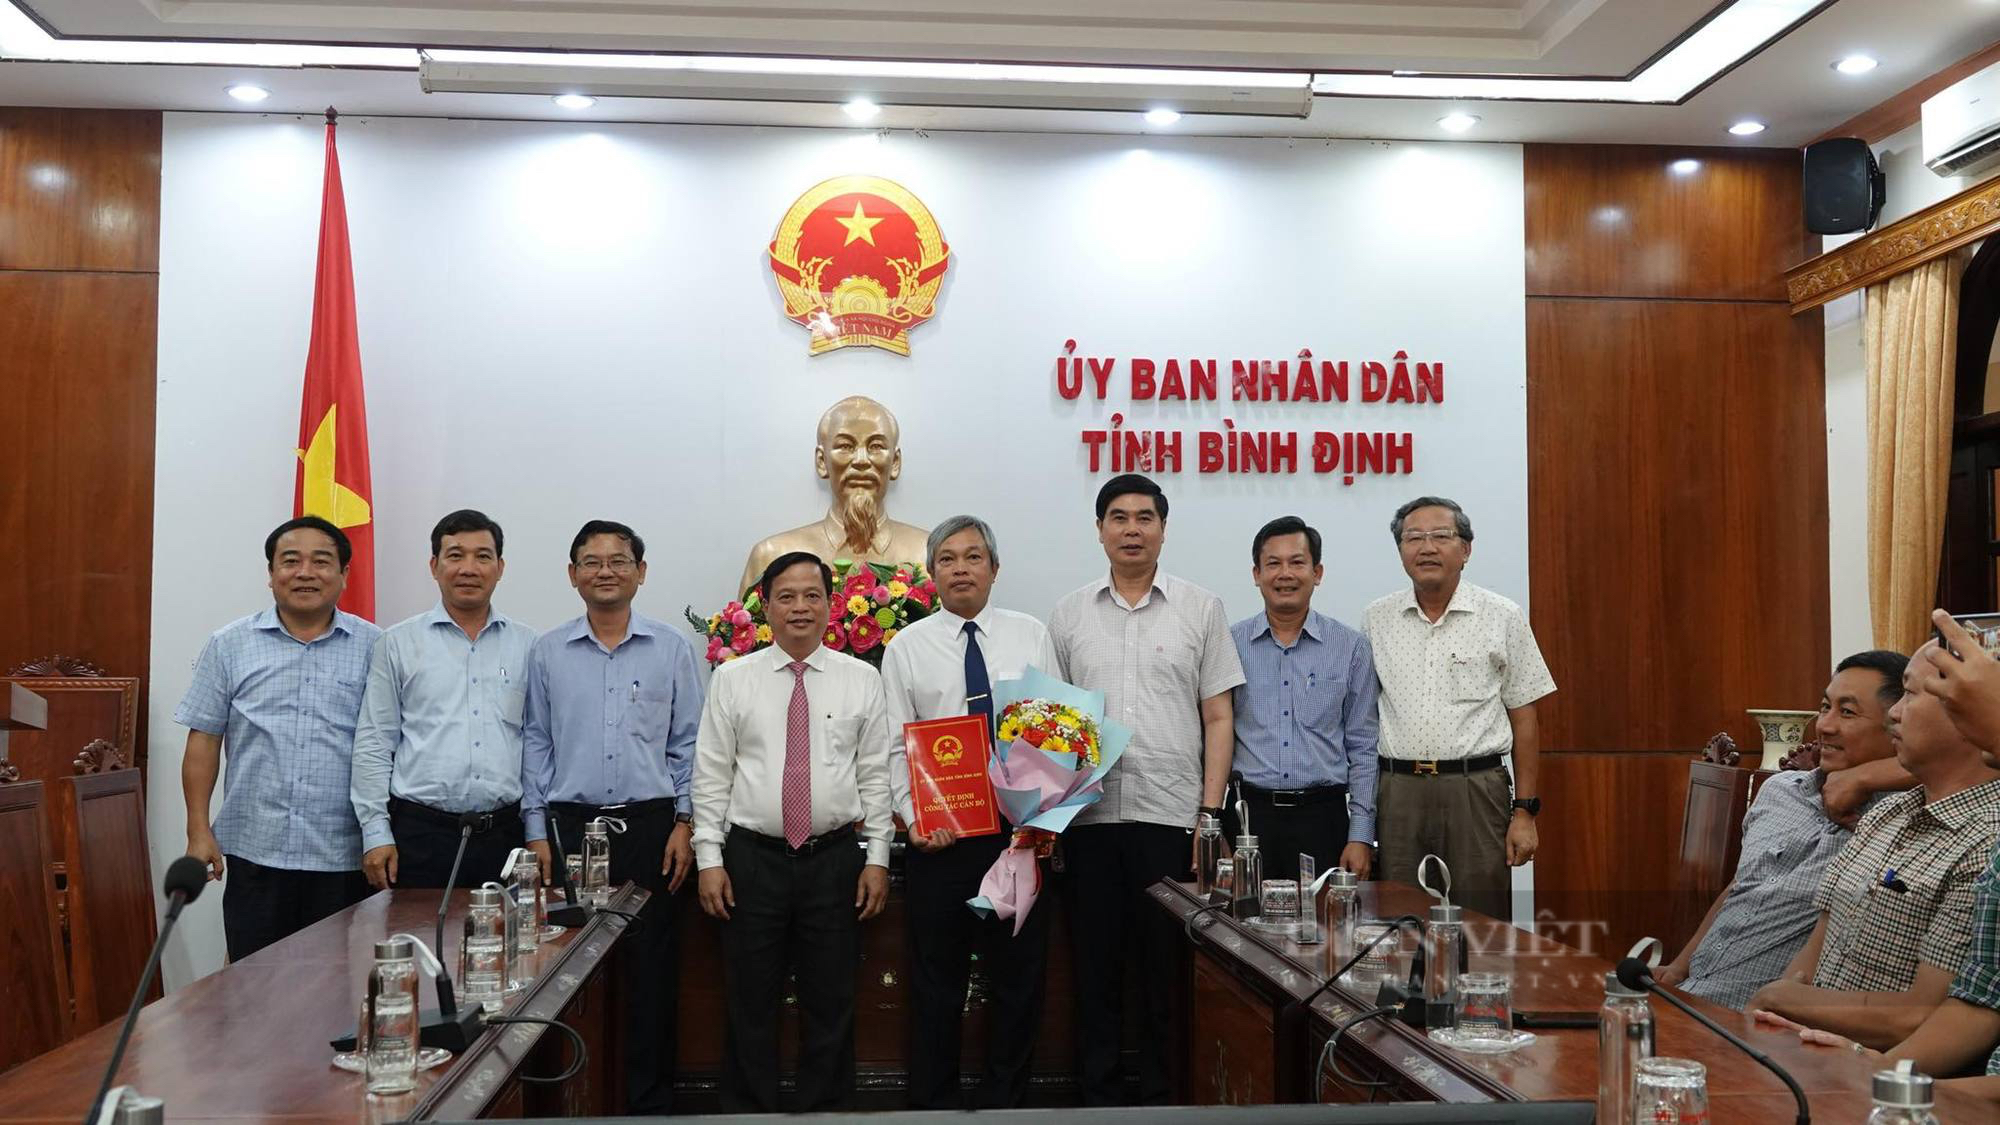 Bí thư Thị ủy giữ chức Trưởng Ban quản lý Khu kinh tế tỉnh Bình Định  - Ảnh 1.